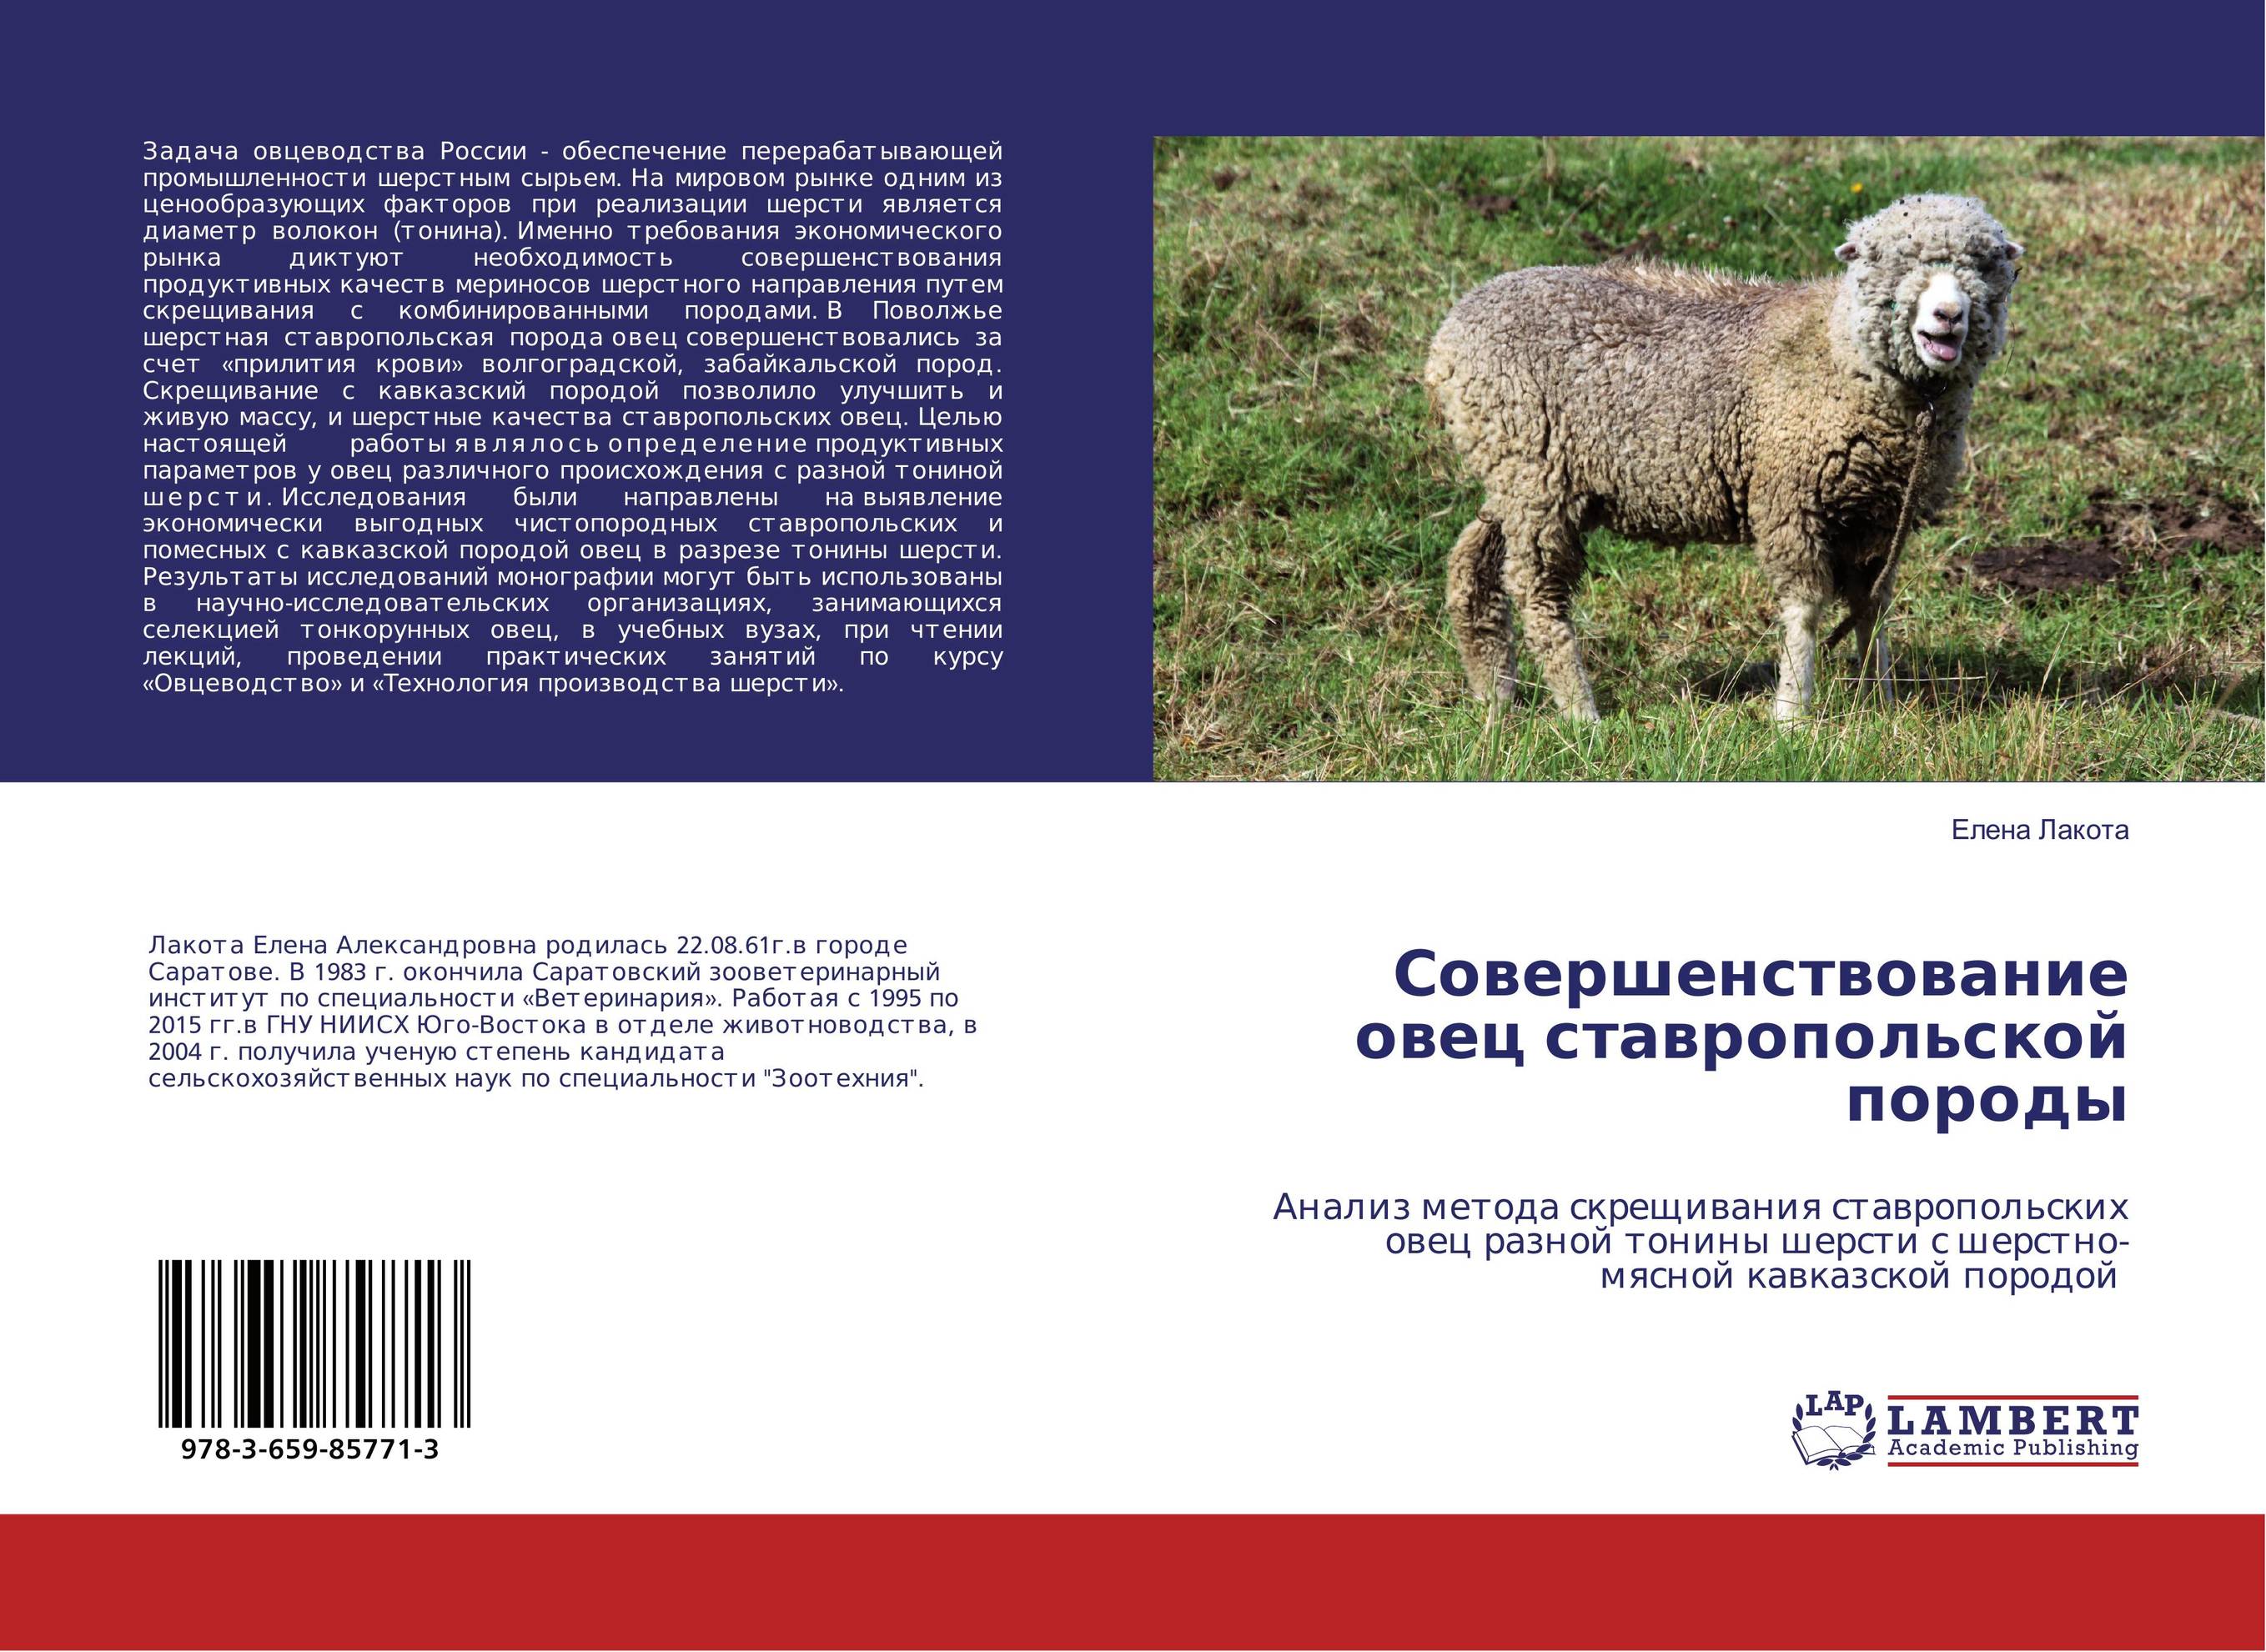 
        Совершенствование овец ставропольской породы. Анализ метода скрещивания ставропольских овец разной тонины шерсти с шерстно-мясной кавказской породой.
      